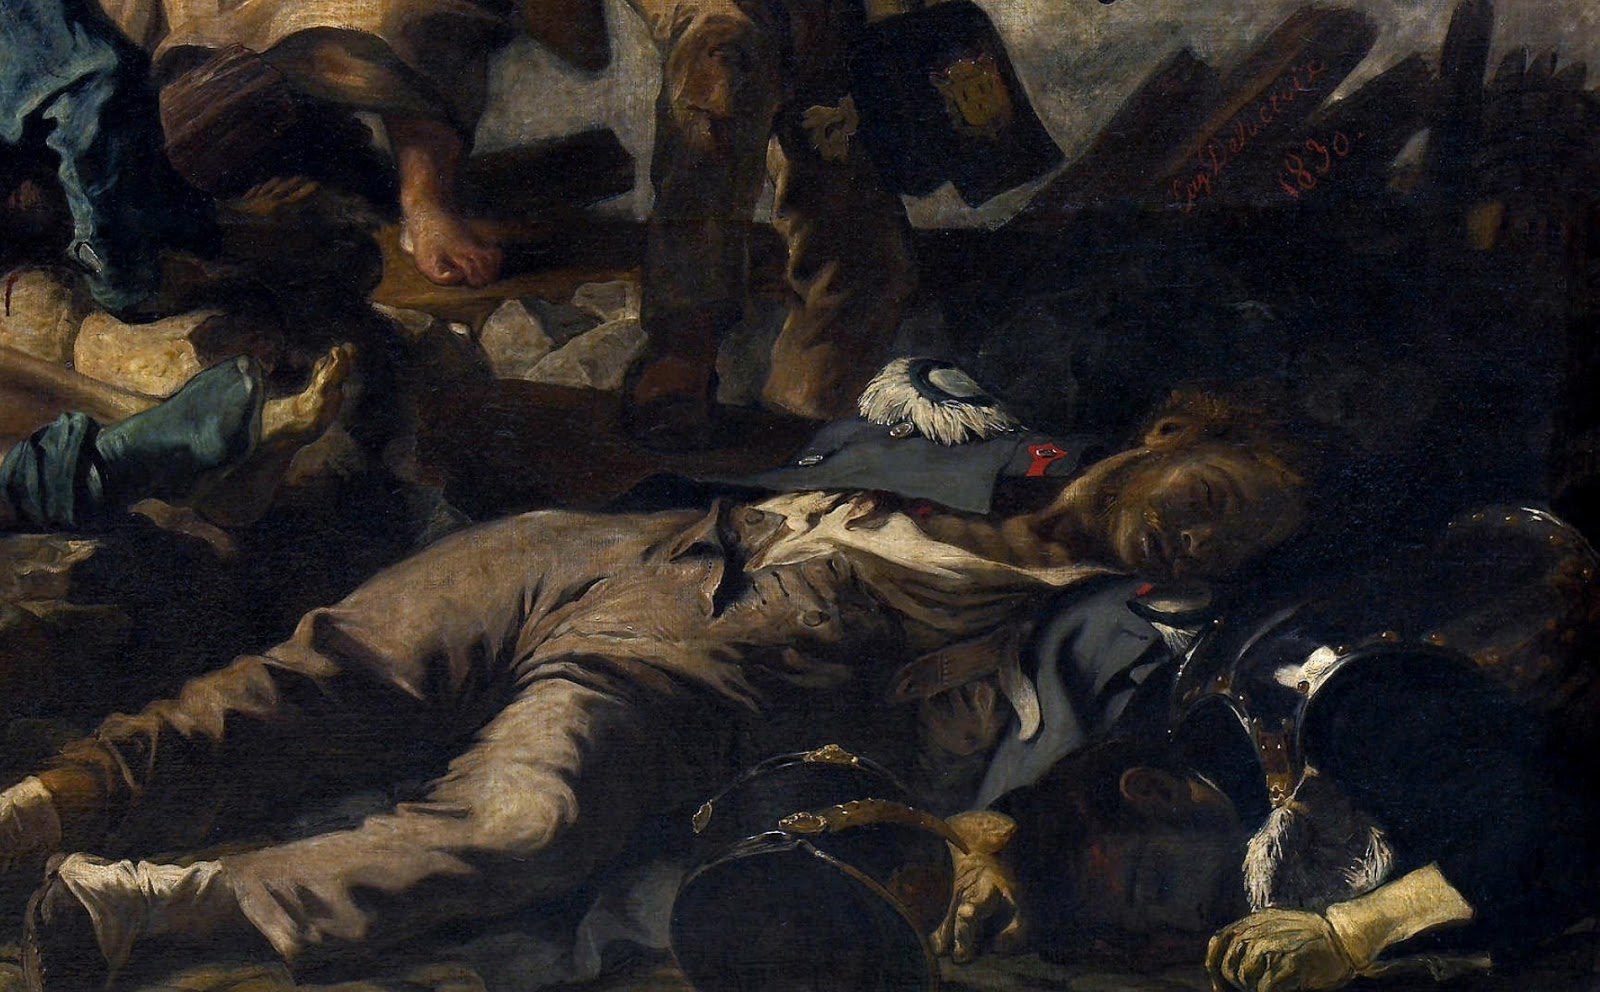 Eugene+Delacroix-1798-1863 (164).jpg